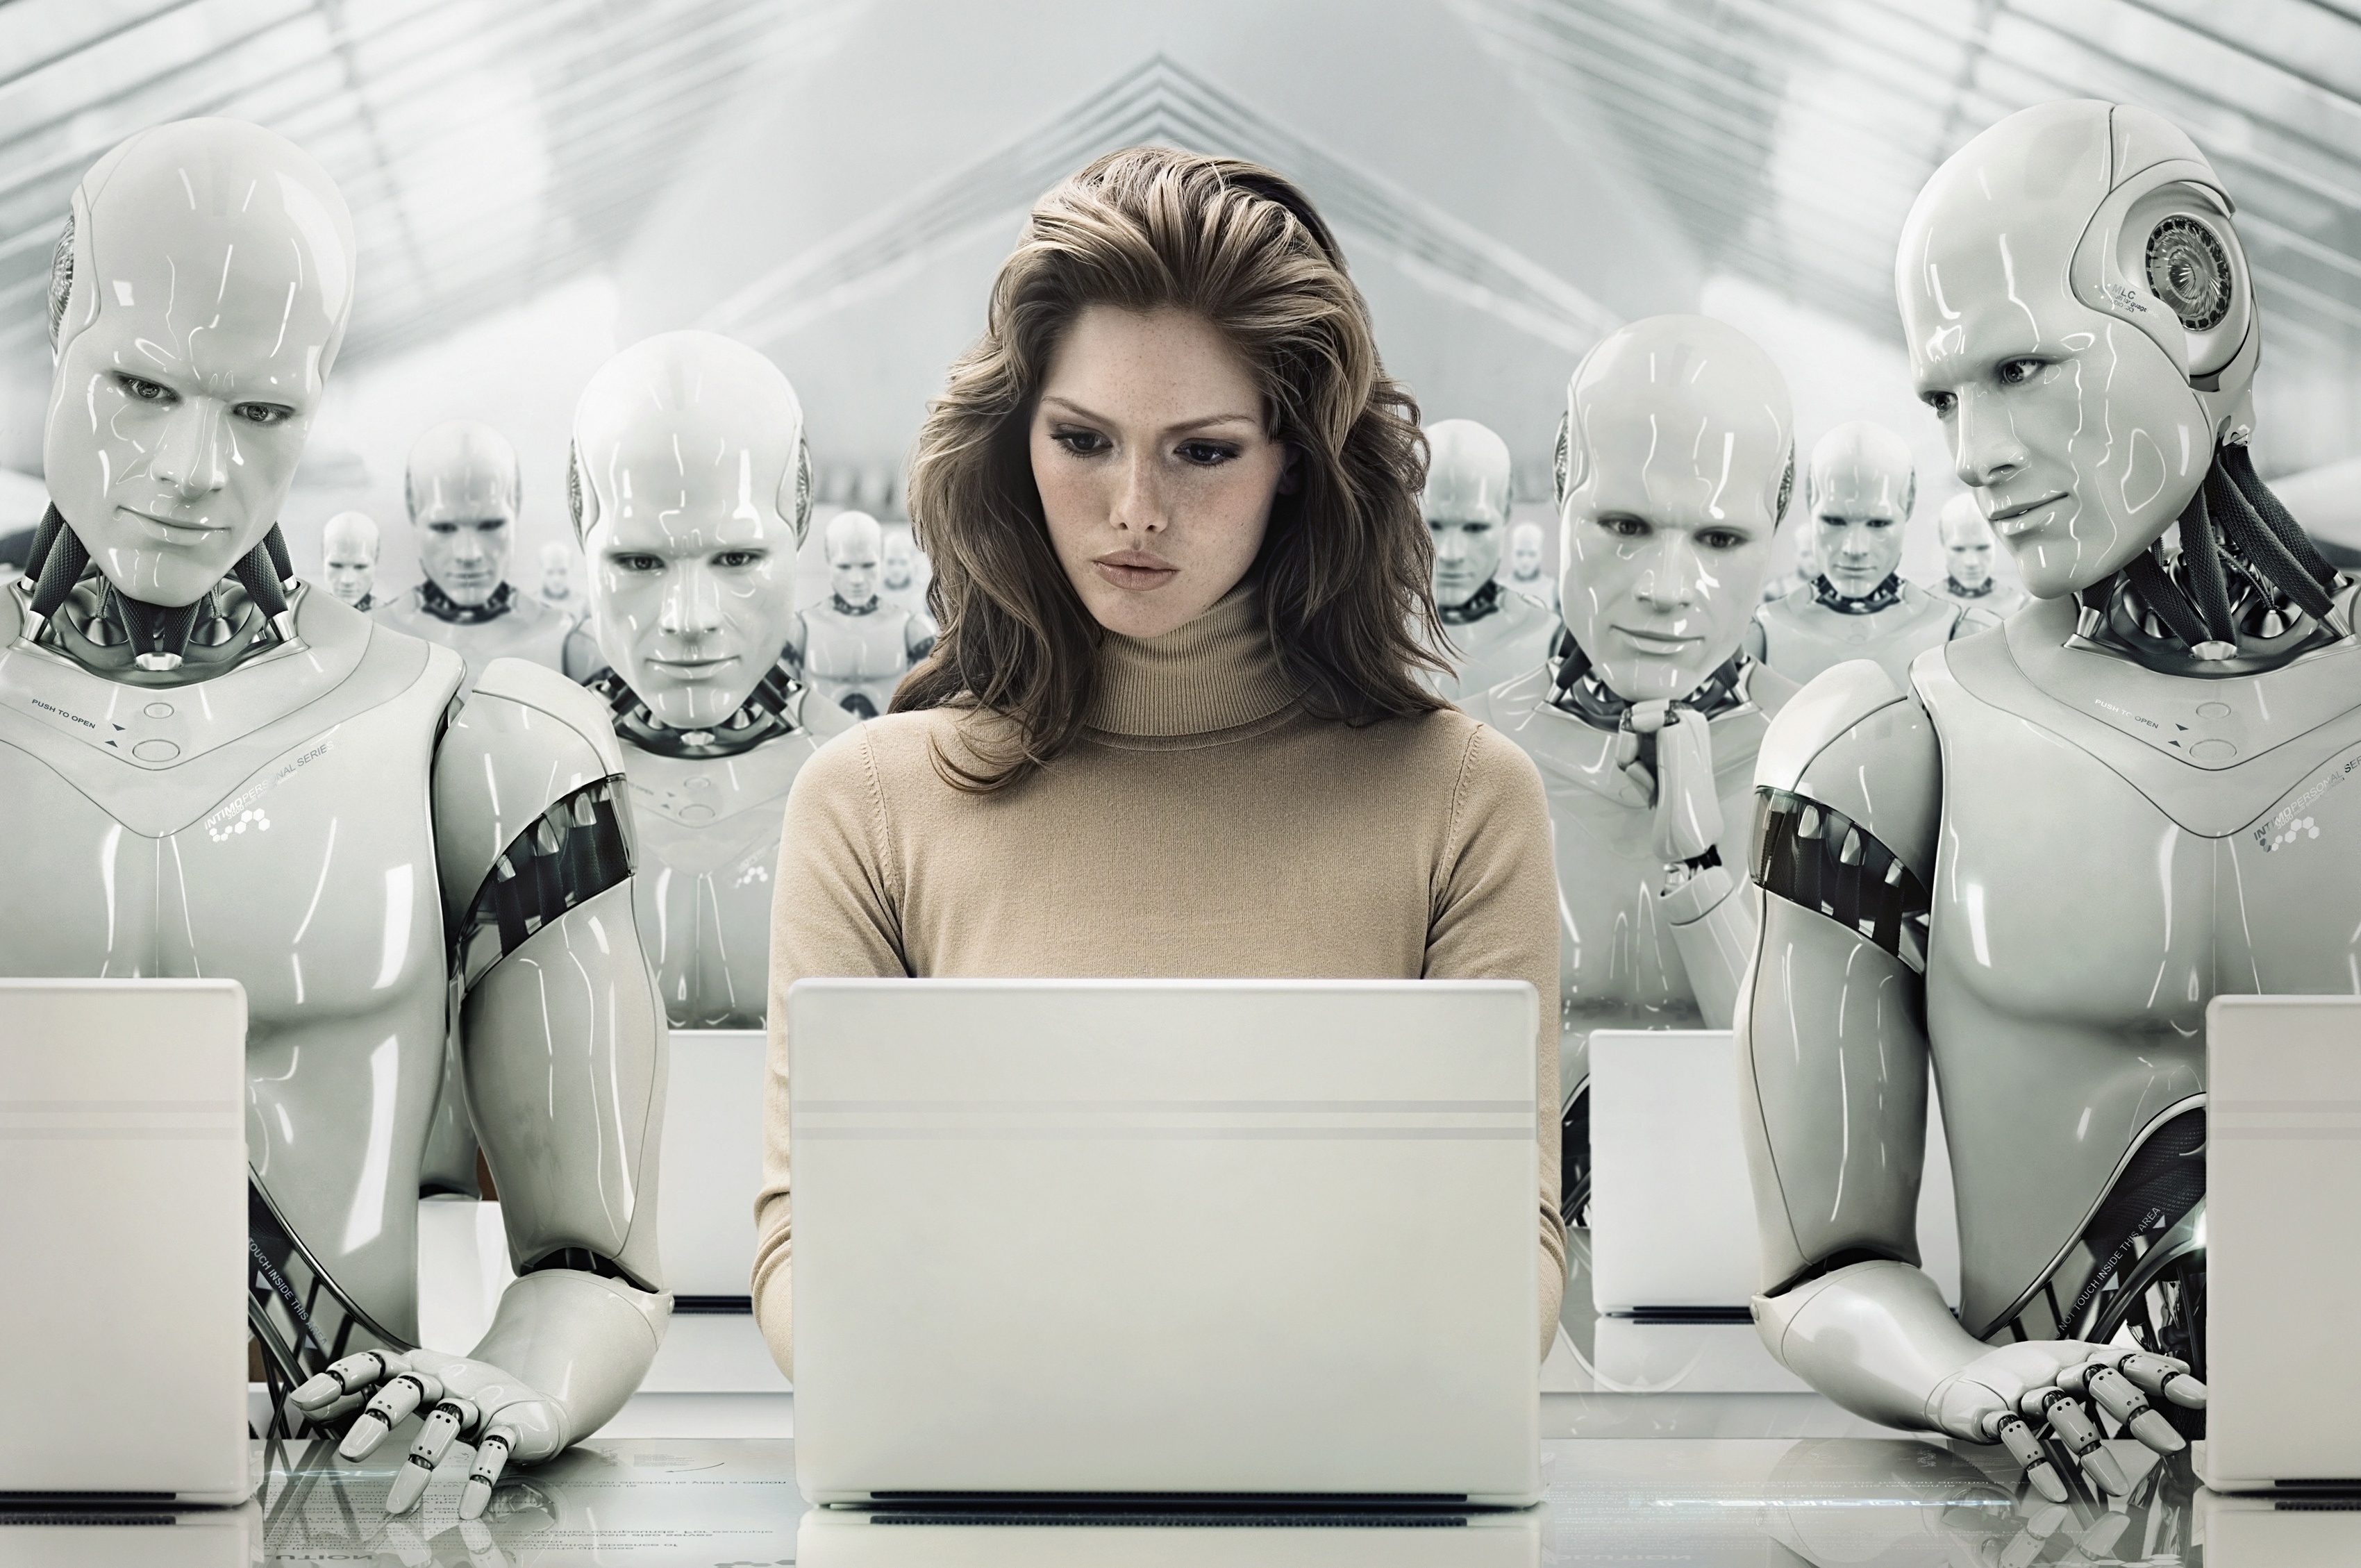 Роботы скоро заменят человека на работе?